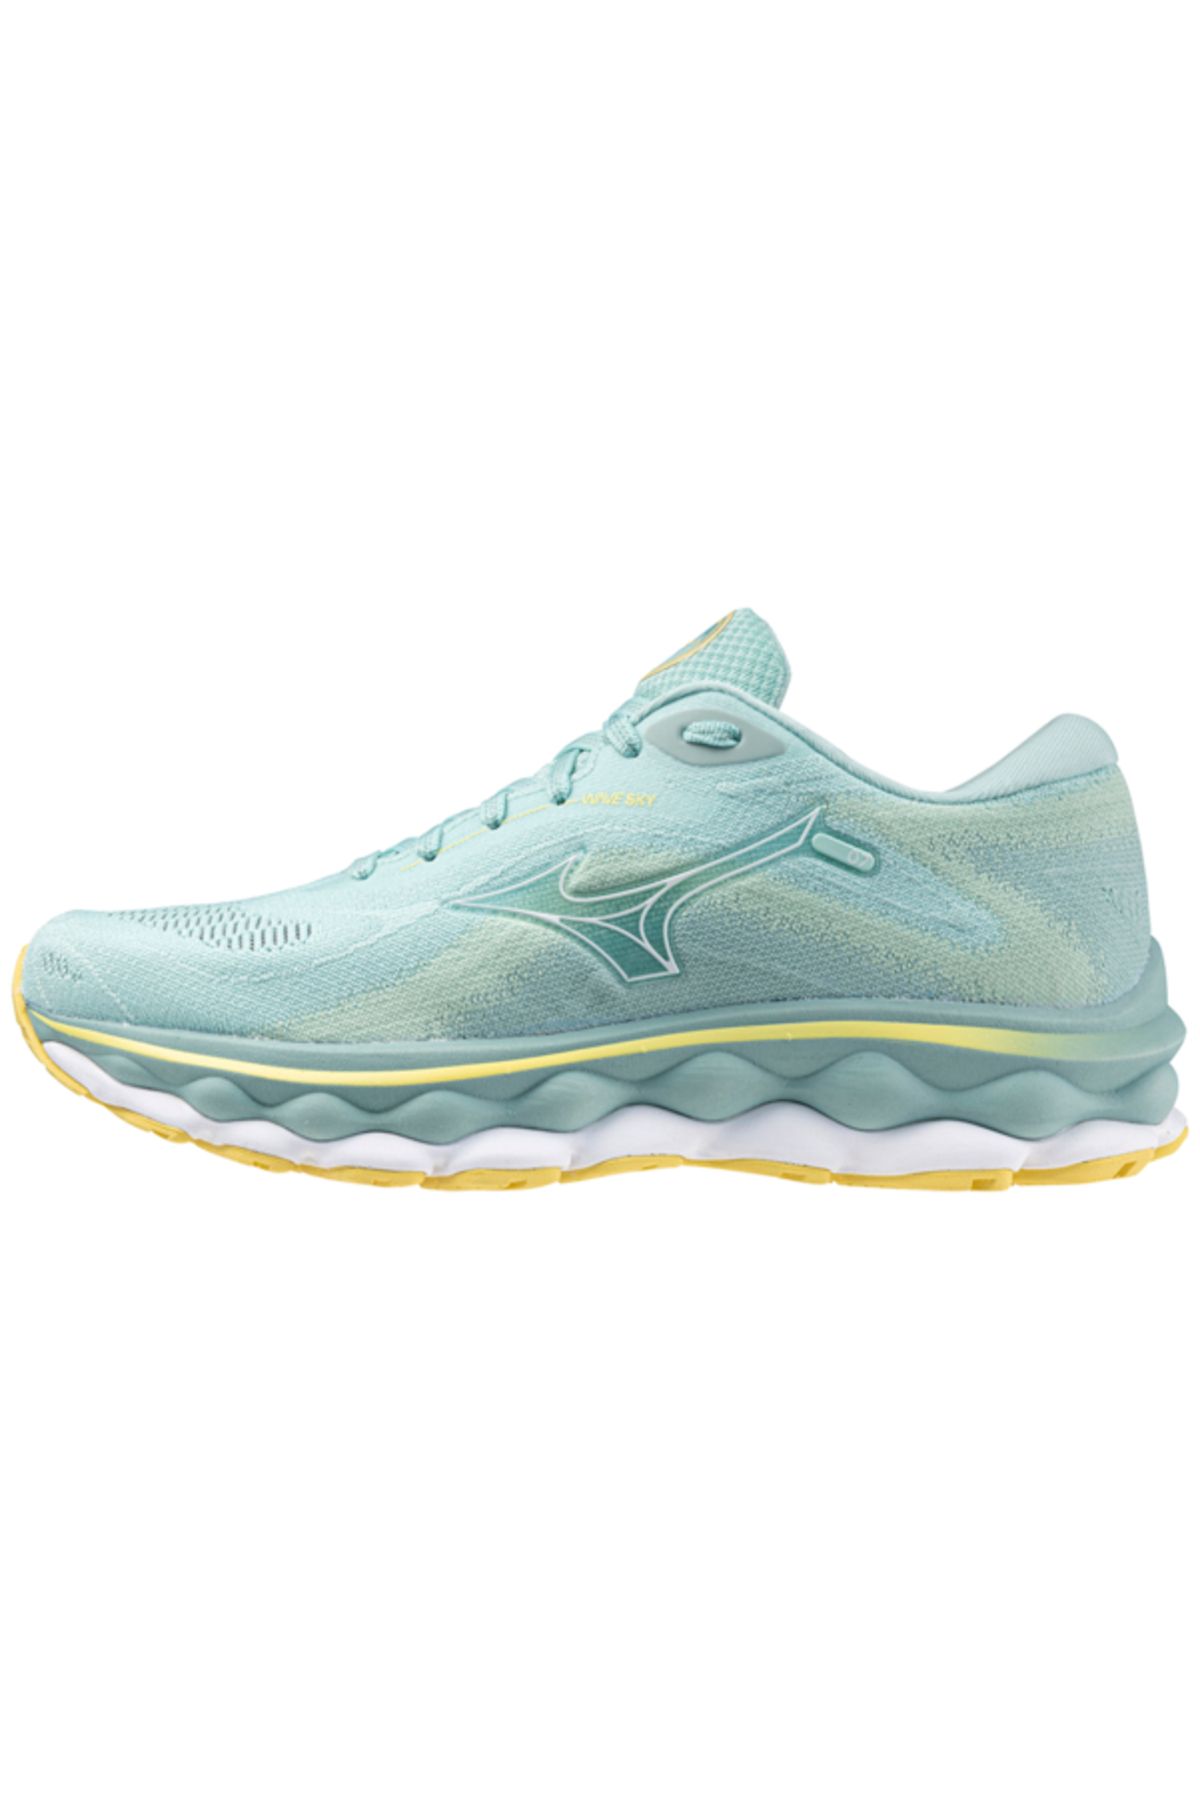 Mizuno Wave Sky 7 Kadın Koşu Ayakkabısı Mavi